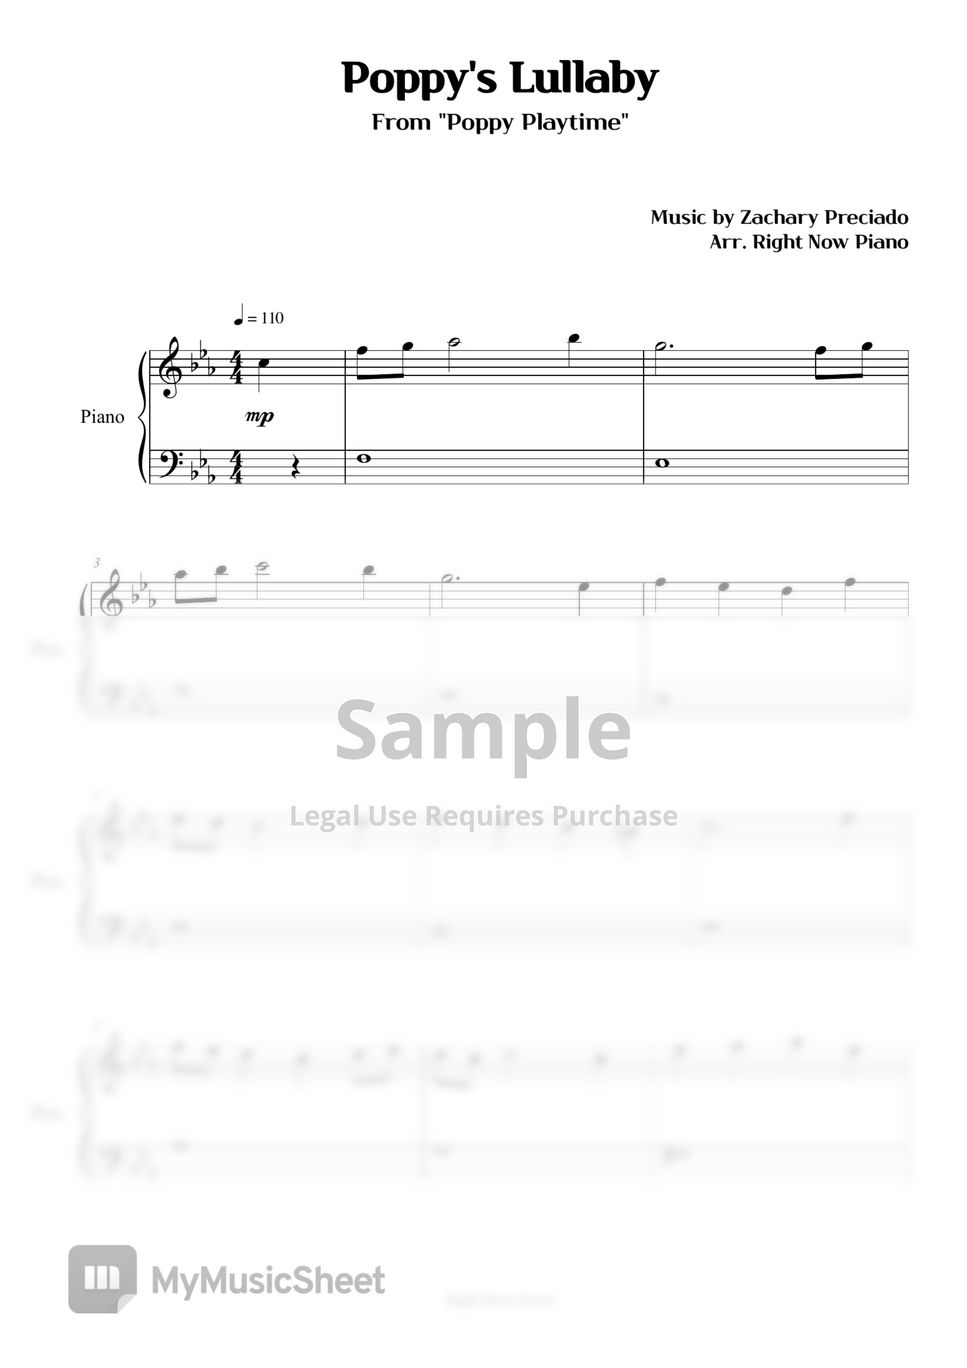 Poppy's Lullaby ~ (Poppy Playtime) OST Sheet music for Celesta (Solo)